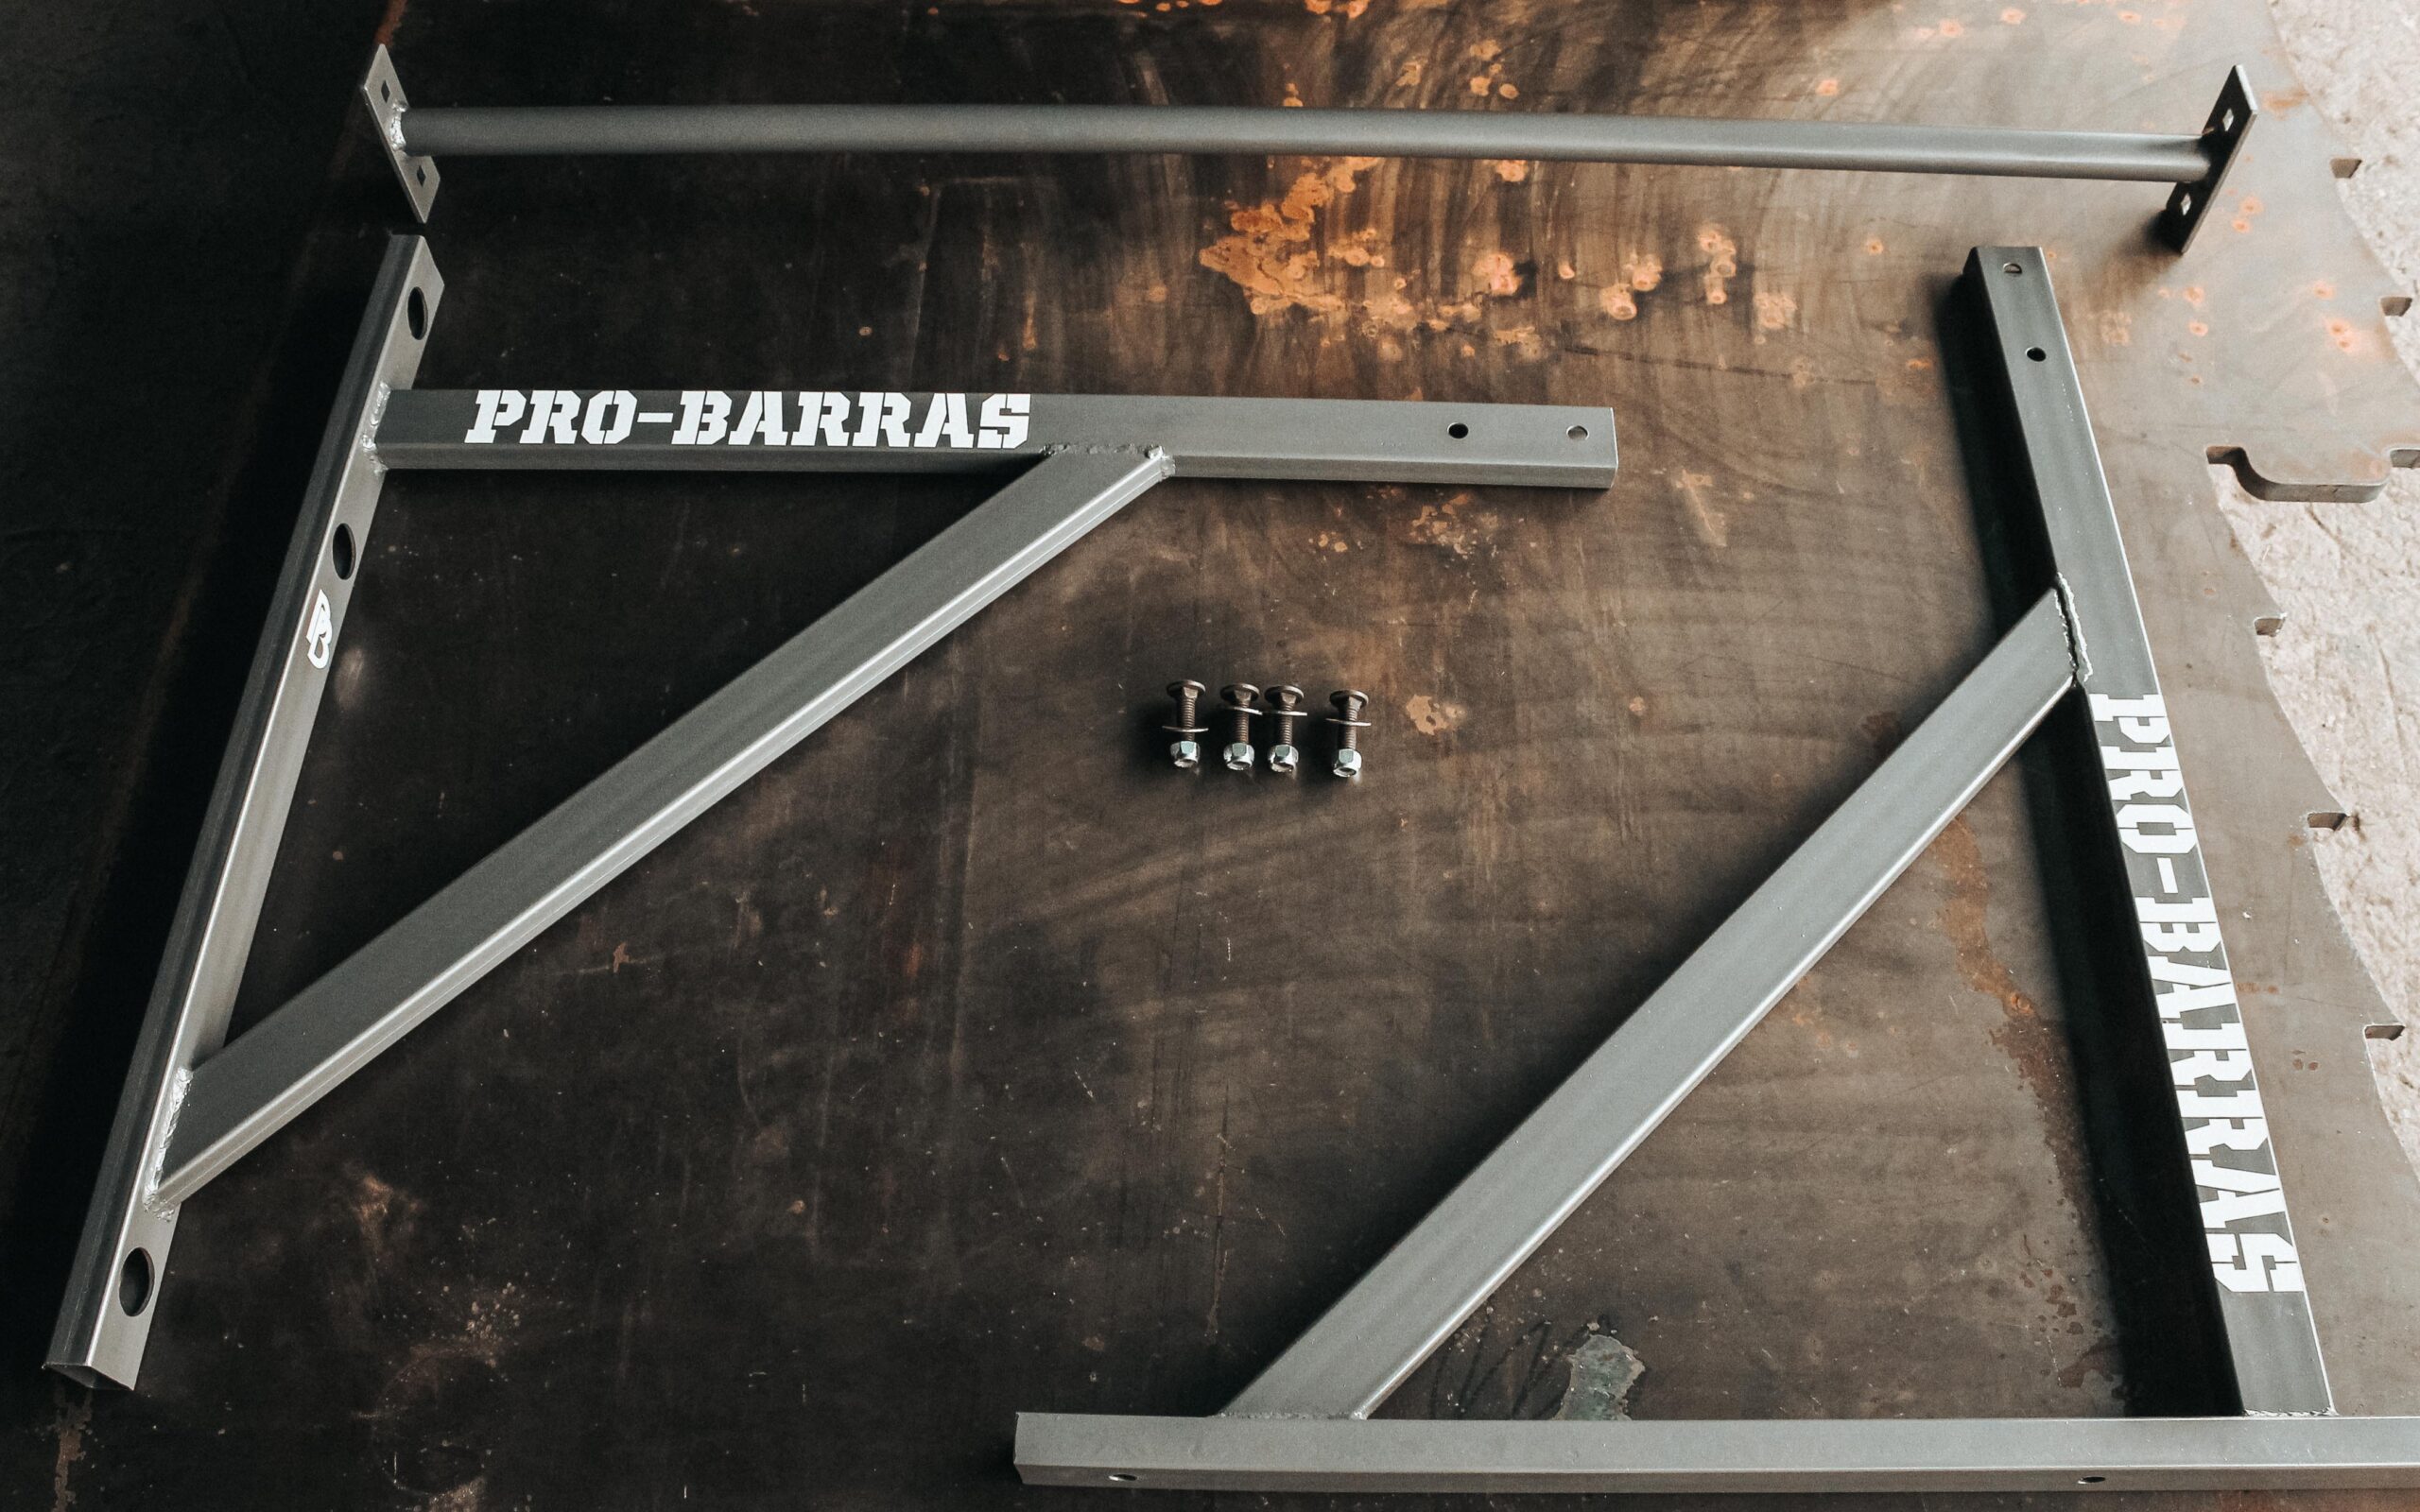 Barra para dominadas (fijación techo) - Pro-barras